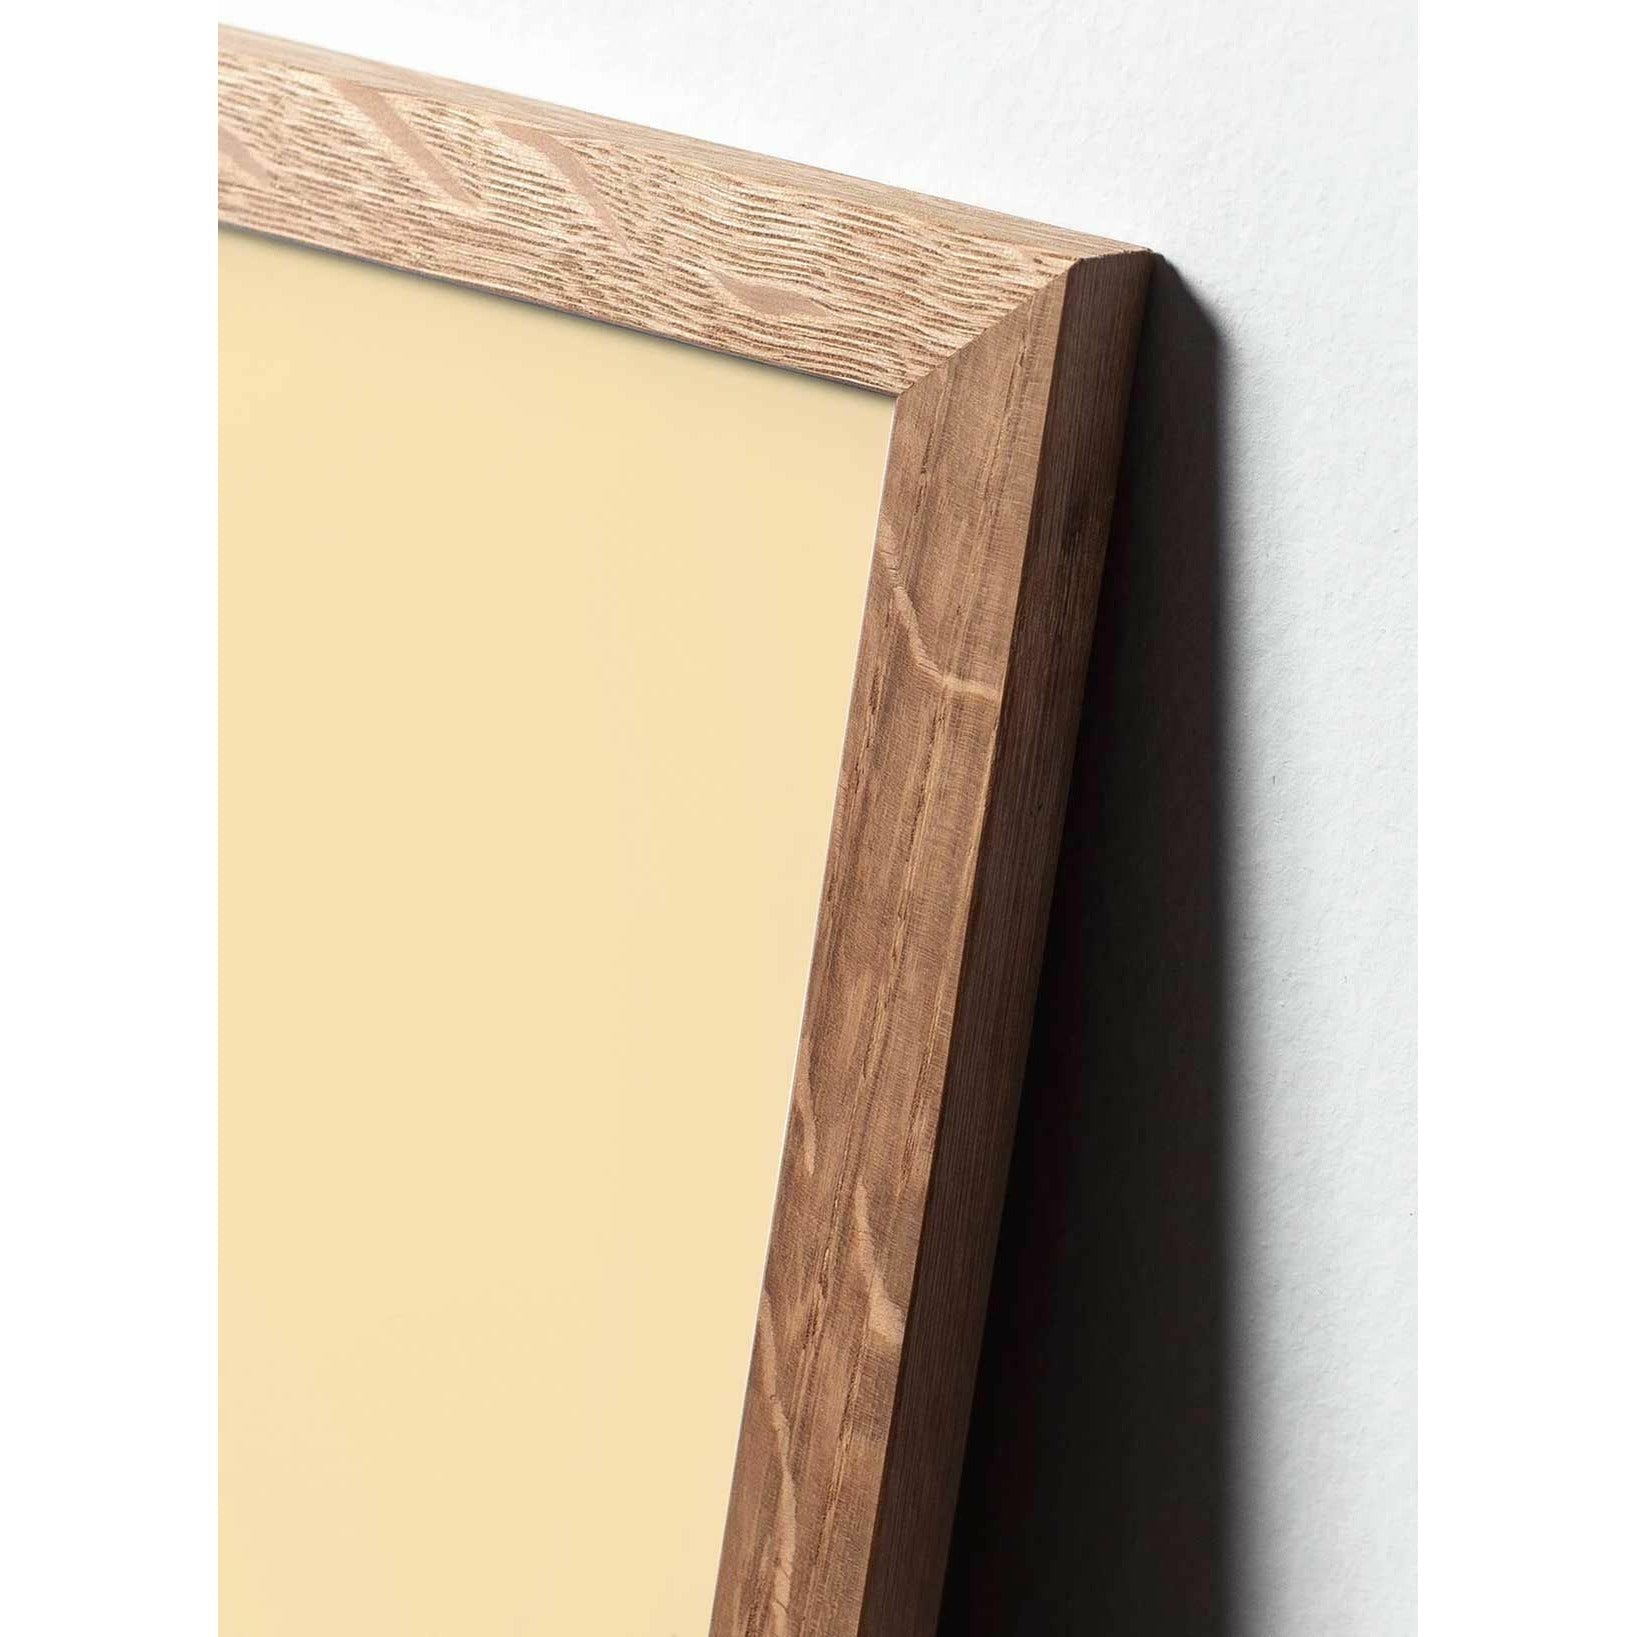 brainchild Pudota klassinen juliste, kehys, joka on valmistettu kevyestä puusta 70x100 cm, hiekanvärinen tausta